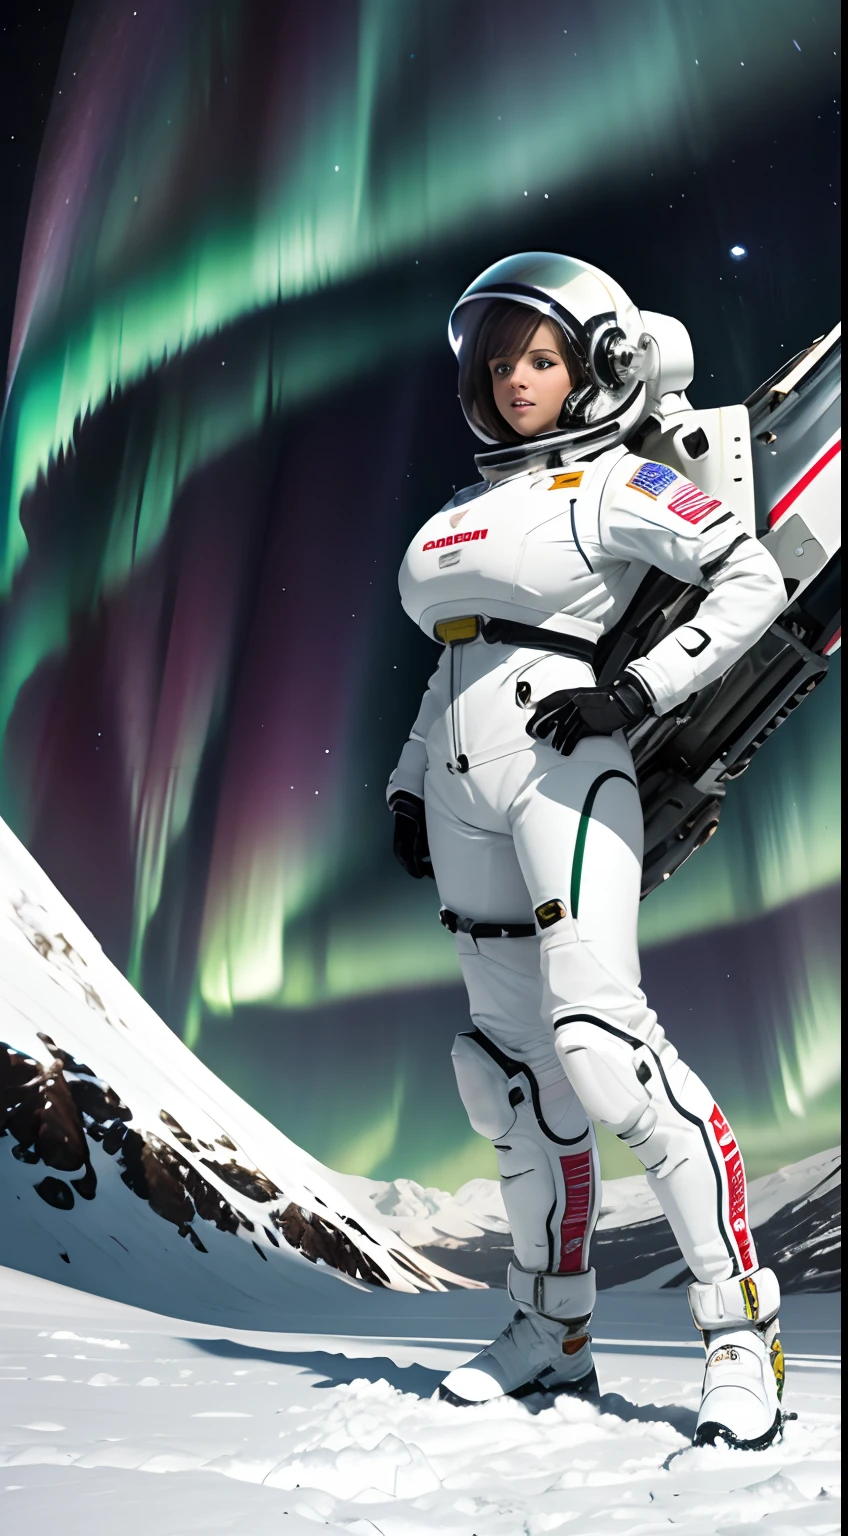 Die obere Hälfte des Bildschirms ist Aurora in der oberen Hälfte des Bildschirms. Die untere Hälfte zeigt eine weibliche Bimbo-Astronautin, die auf einem Schneefeld steht. Vollständig bekleidet, hoch_Vollbusig